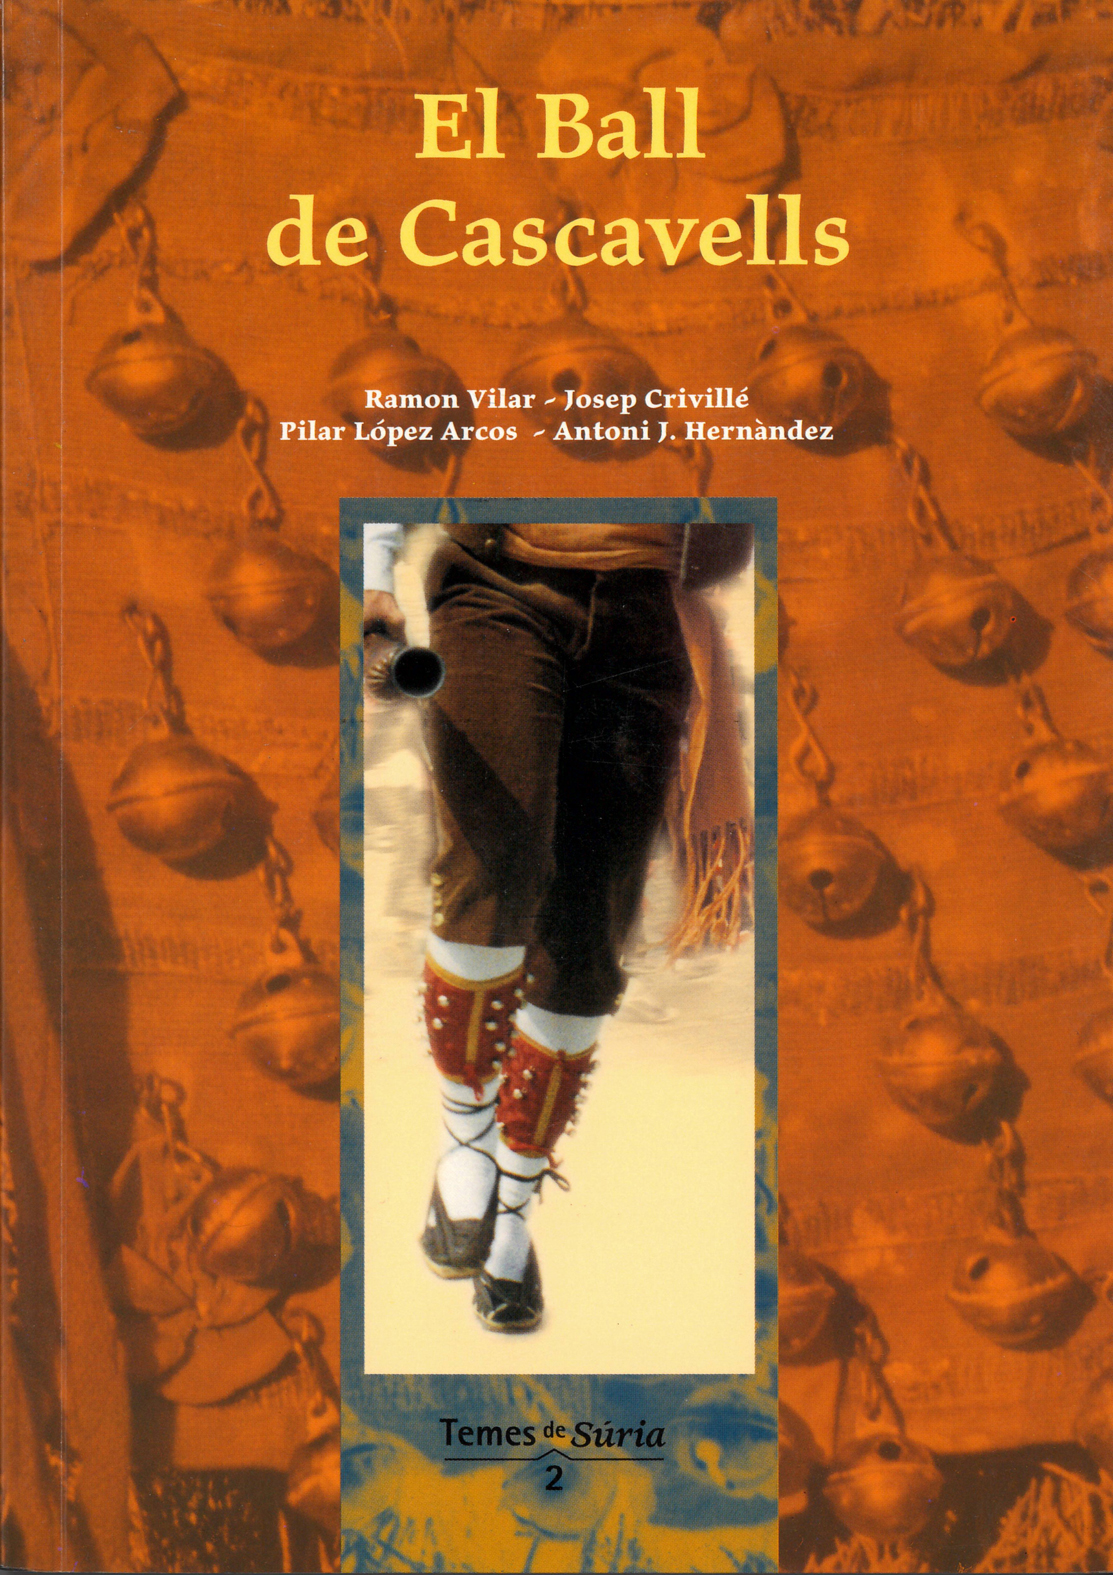 Any 2003 - Portada del llibre 'El Ball de Cascavells' de Ramon Vilar, Josep CrivillÃ©, PIlar LÃ³pez Arcos i Antoni J. HernÃ ndez.